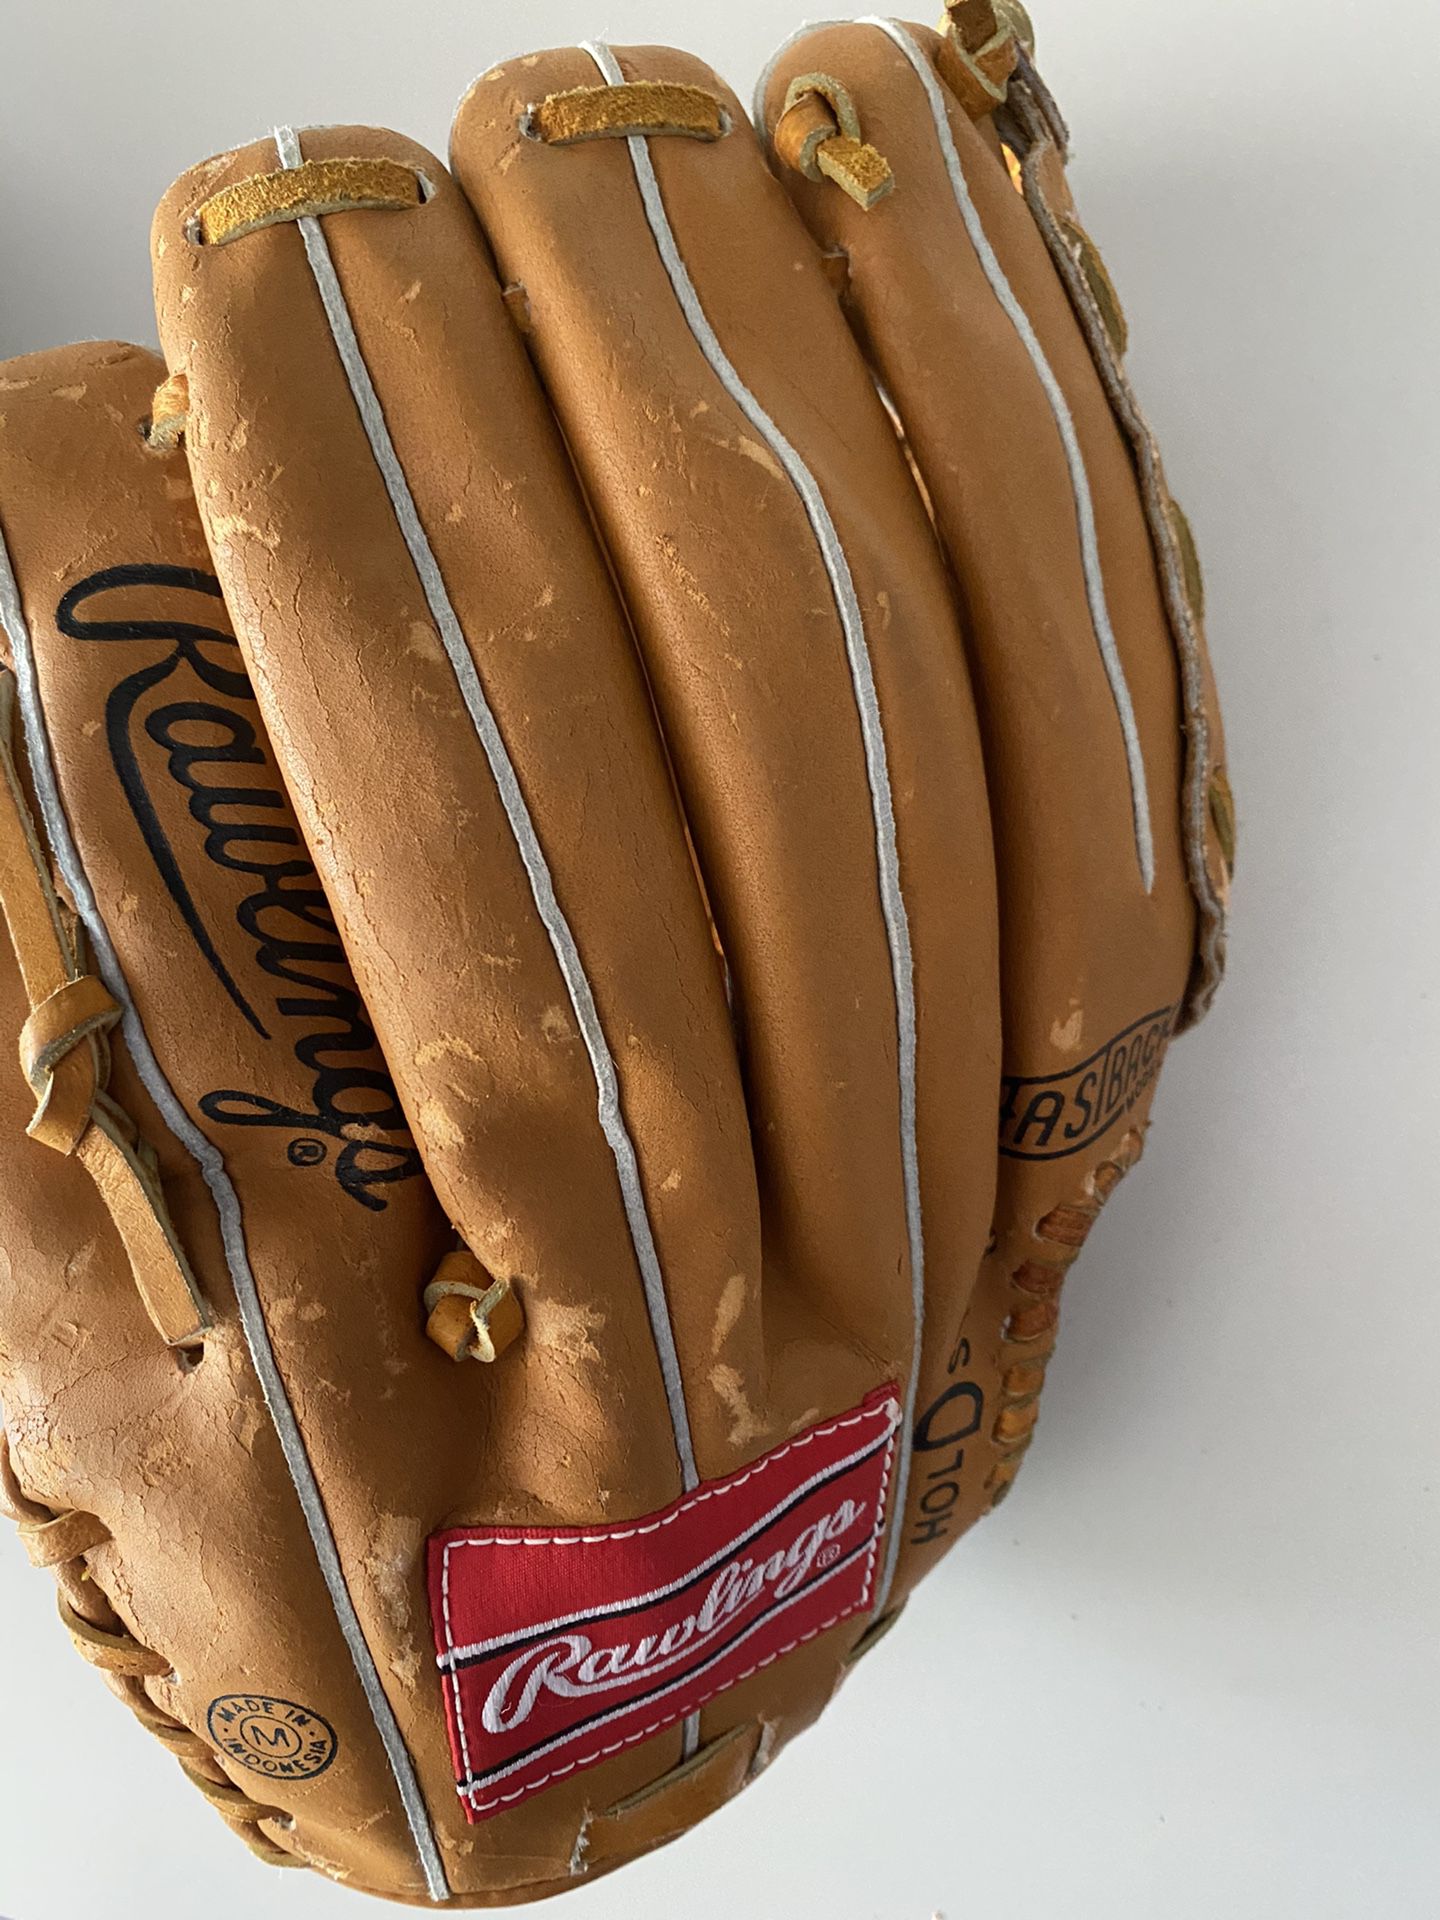 Used Rawlings Baseball Glove